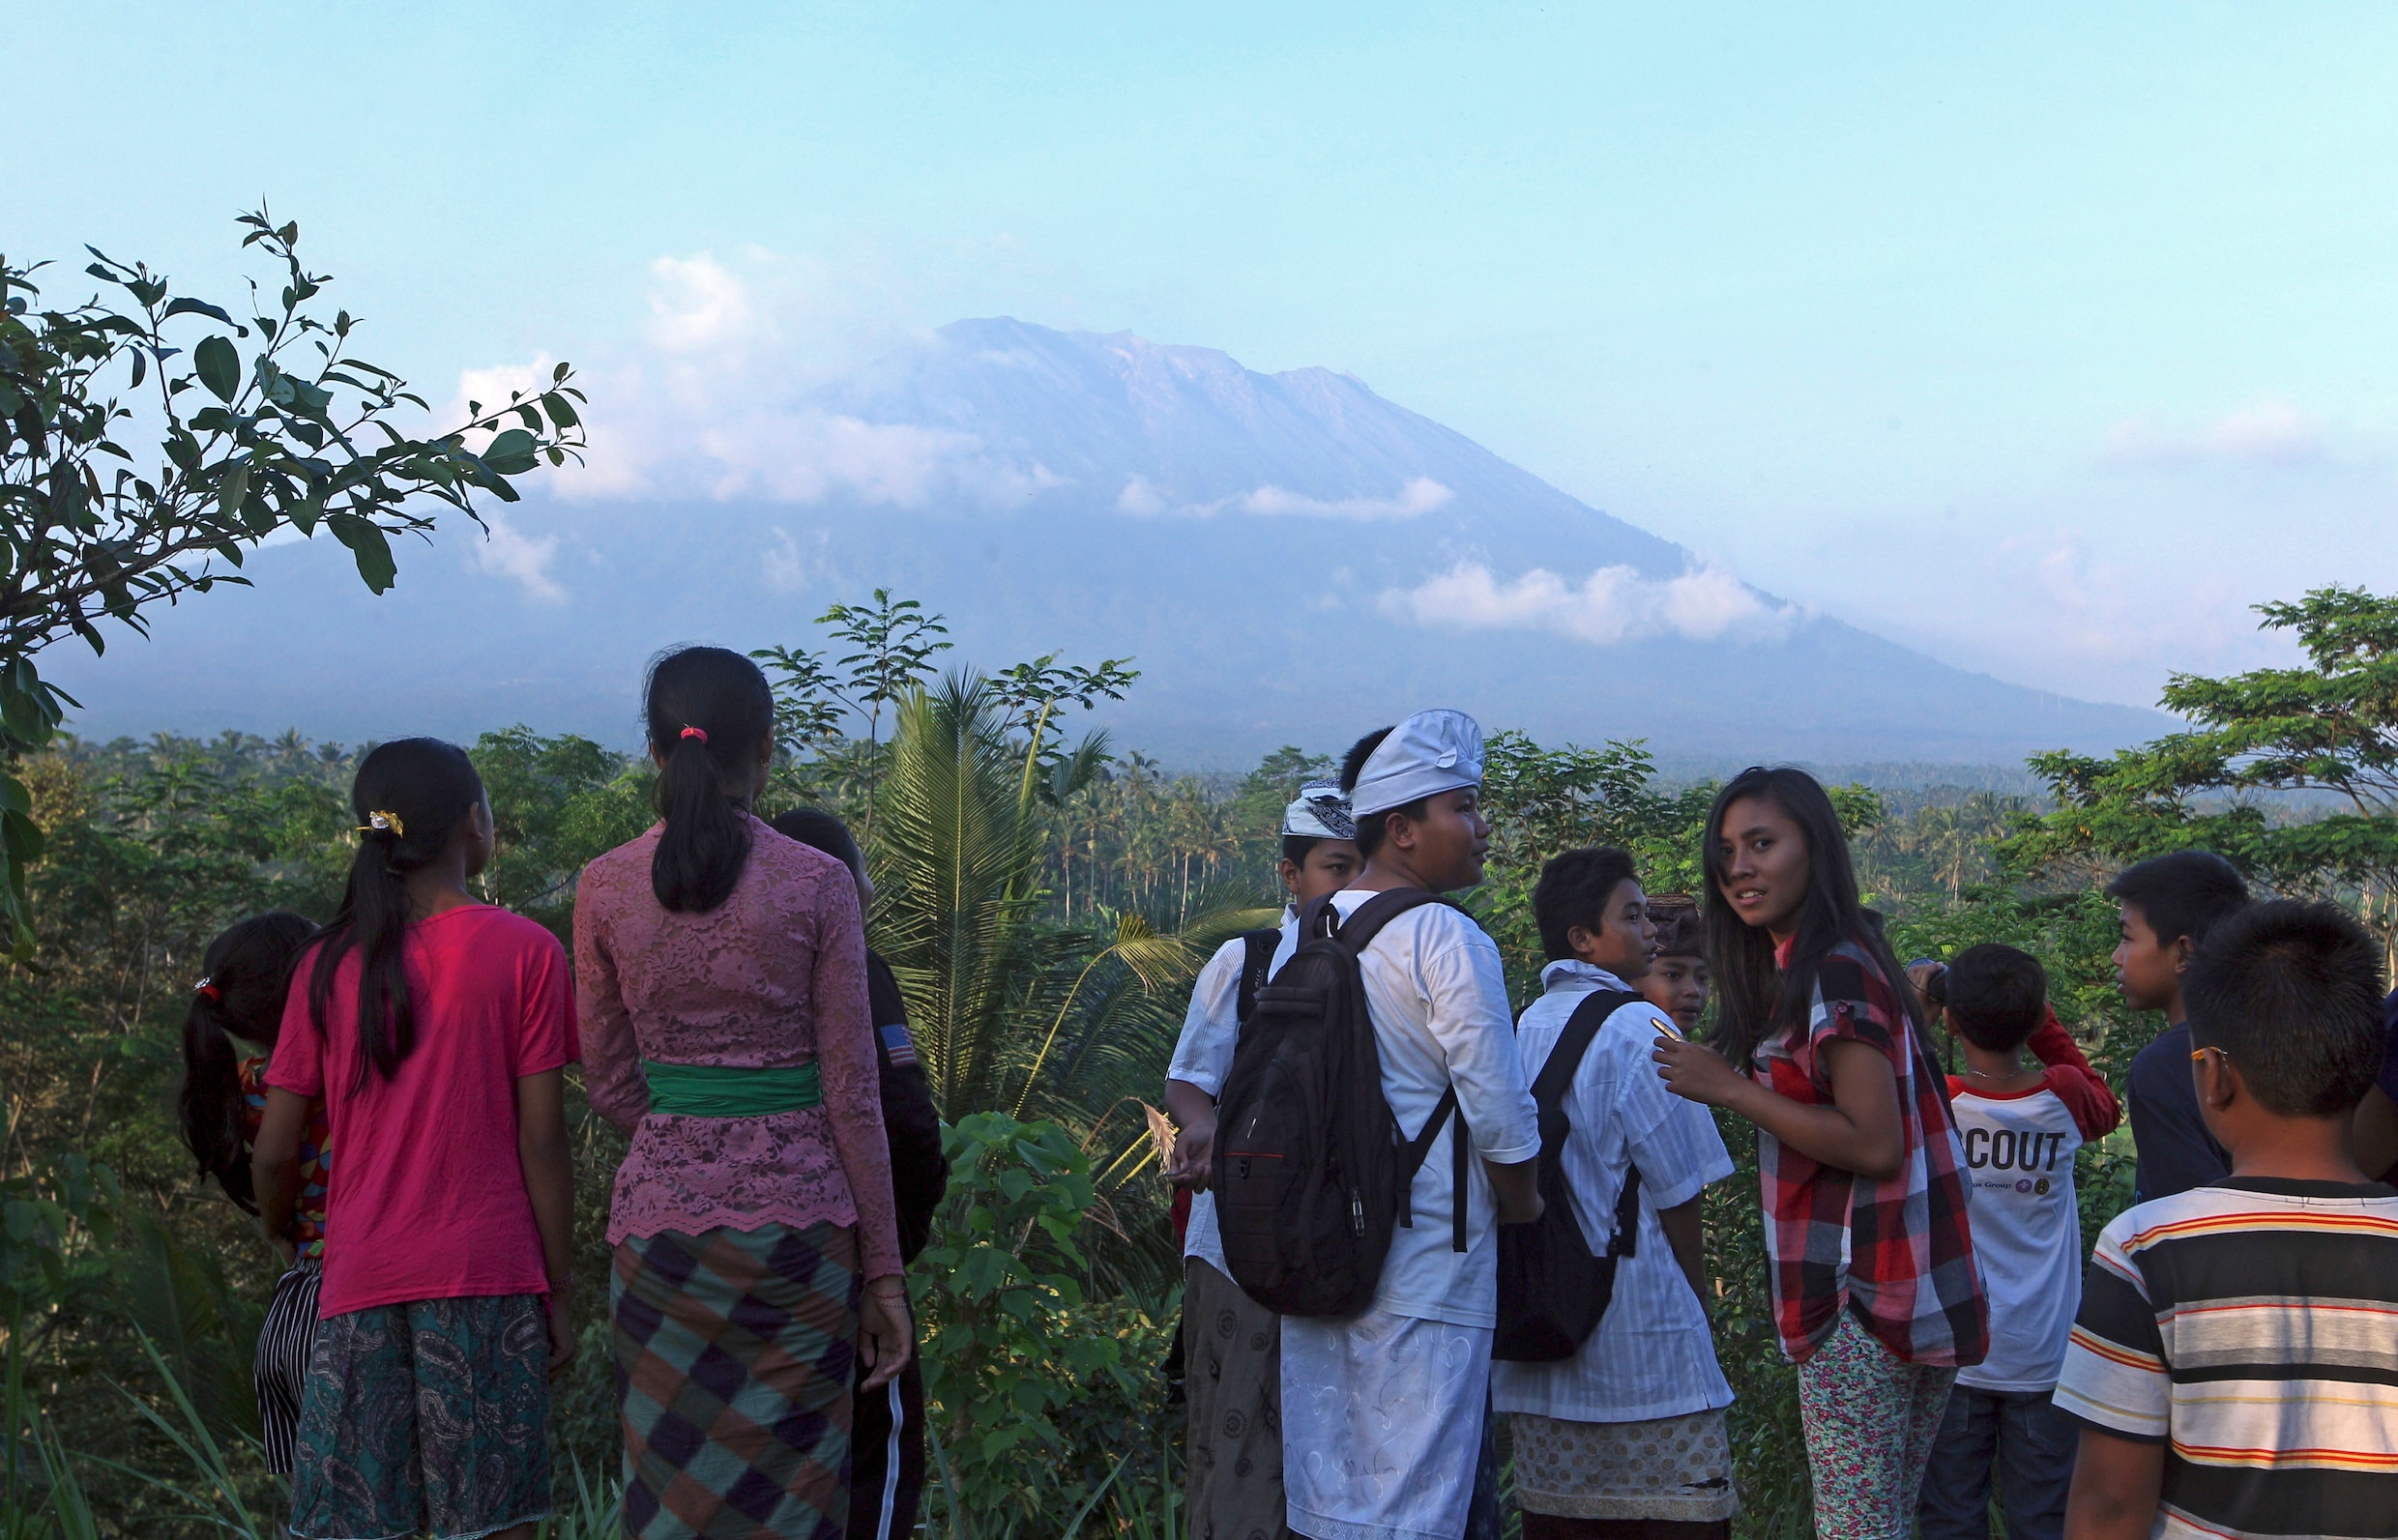 Duizenden inwoners en toeristen rond vulkaan Bali geëvacueerd